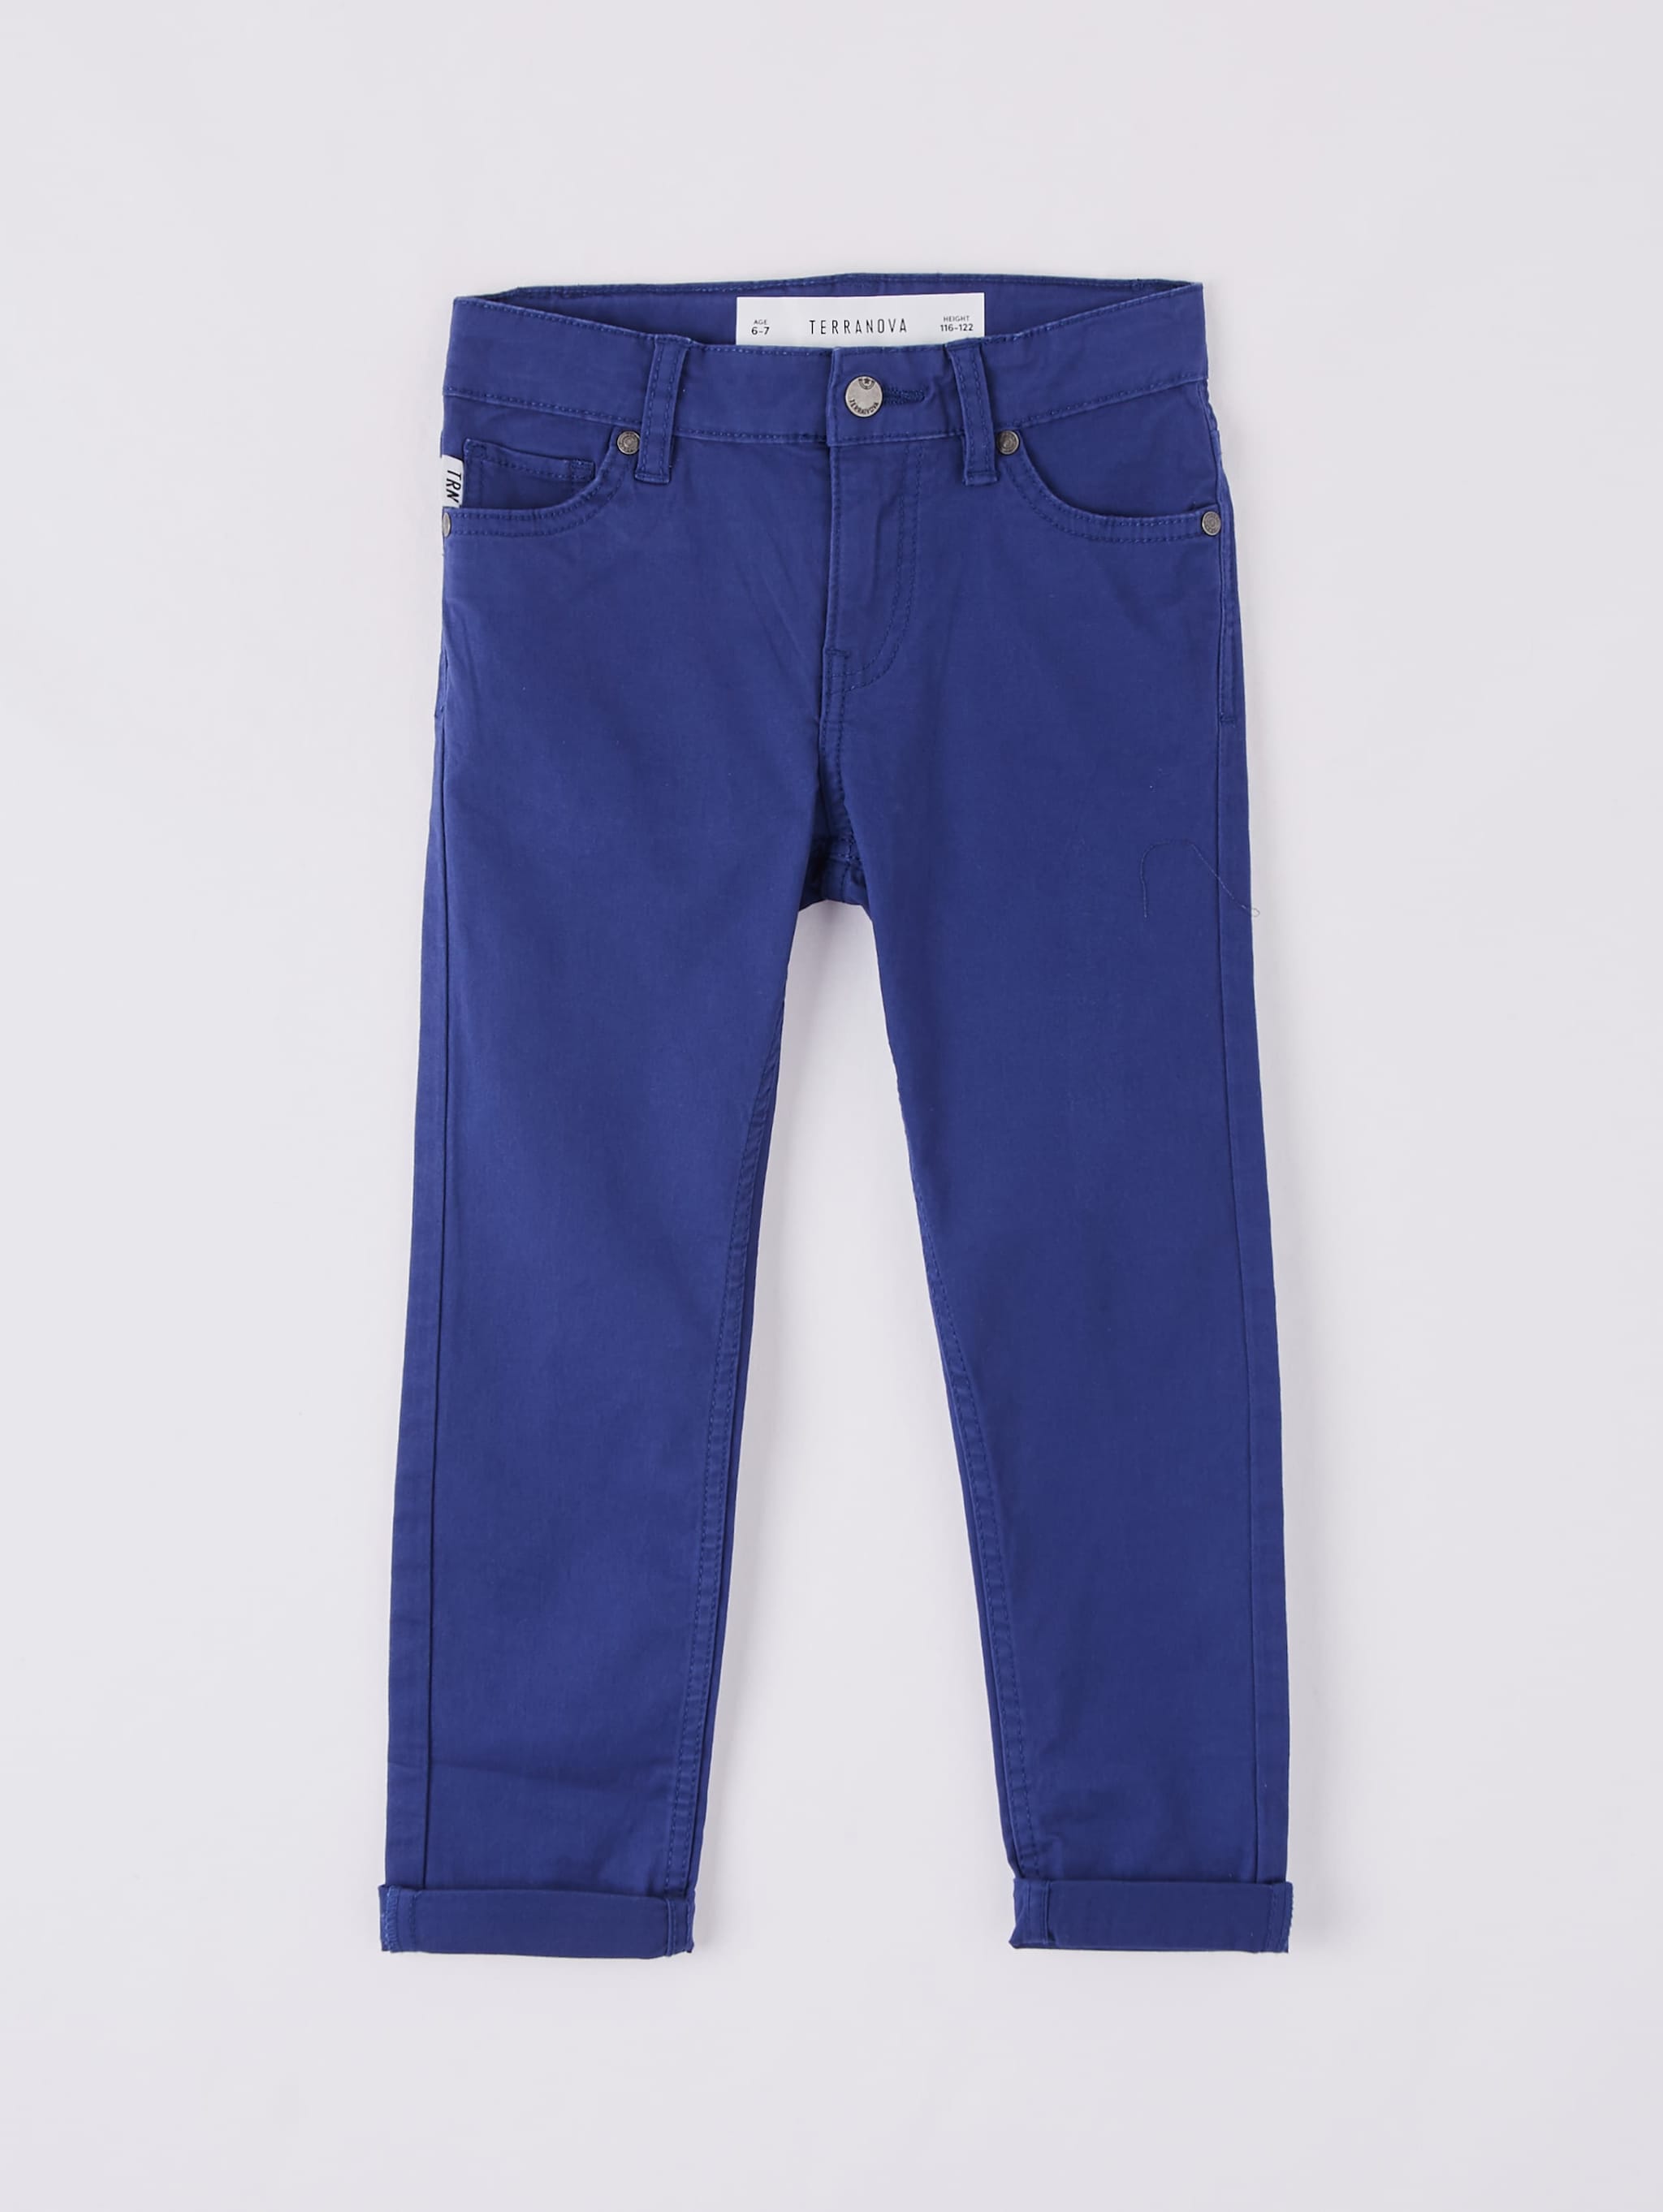 plain blue jeans